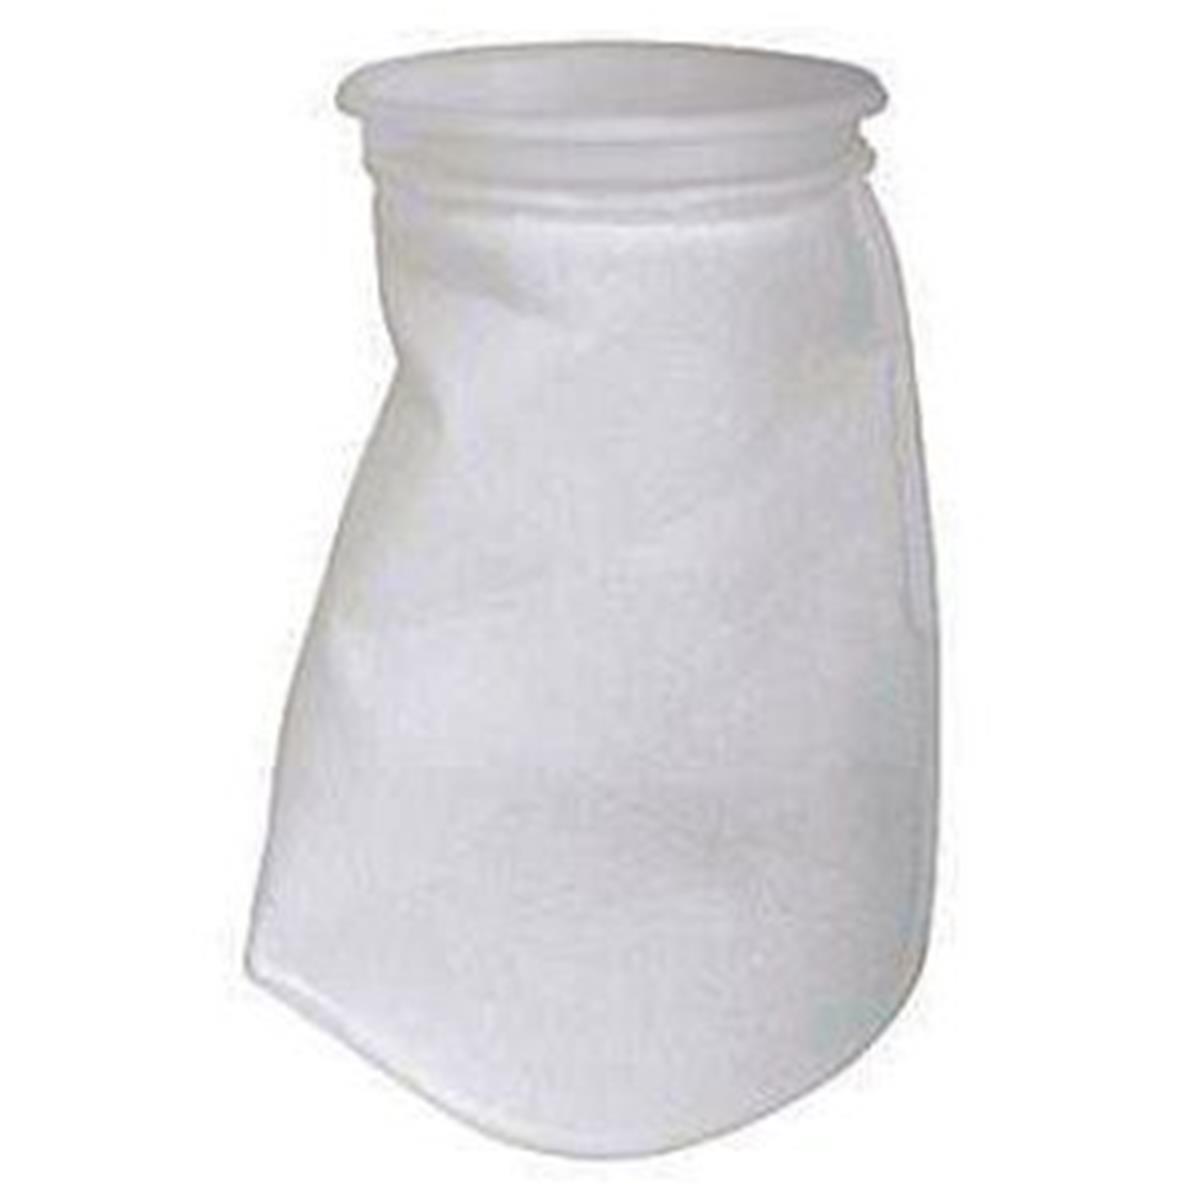 Pentek-bp-410-10 Polypropylene Bag Filter, 10 Micron